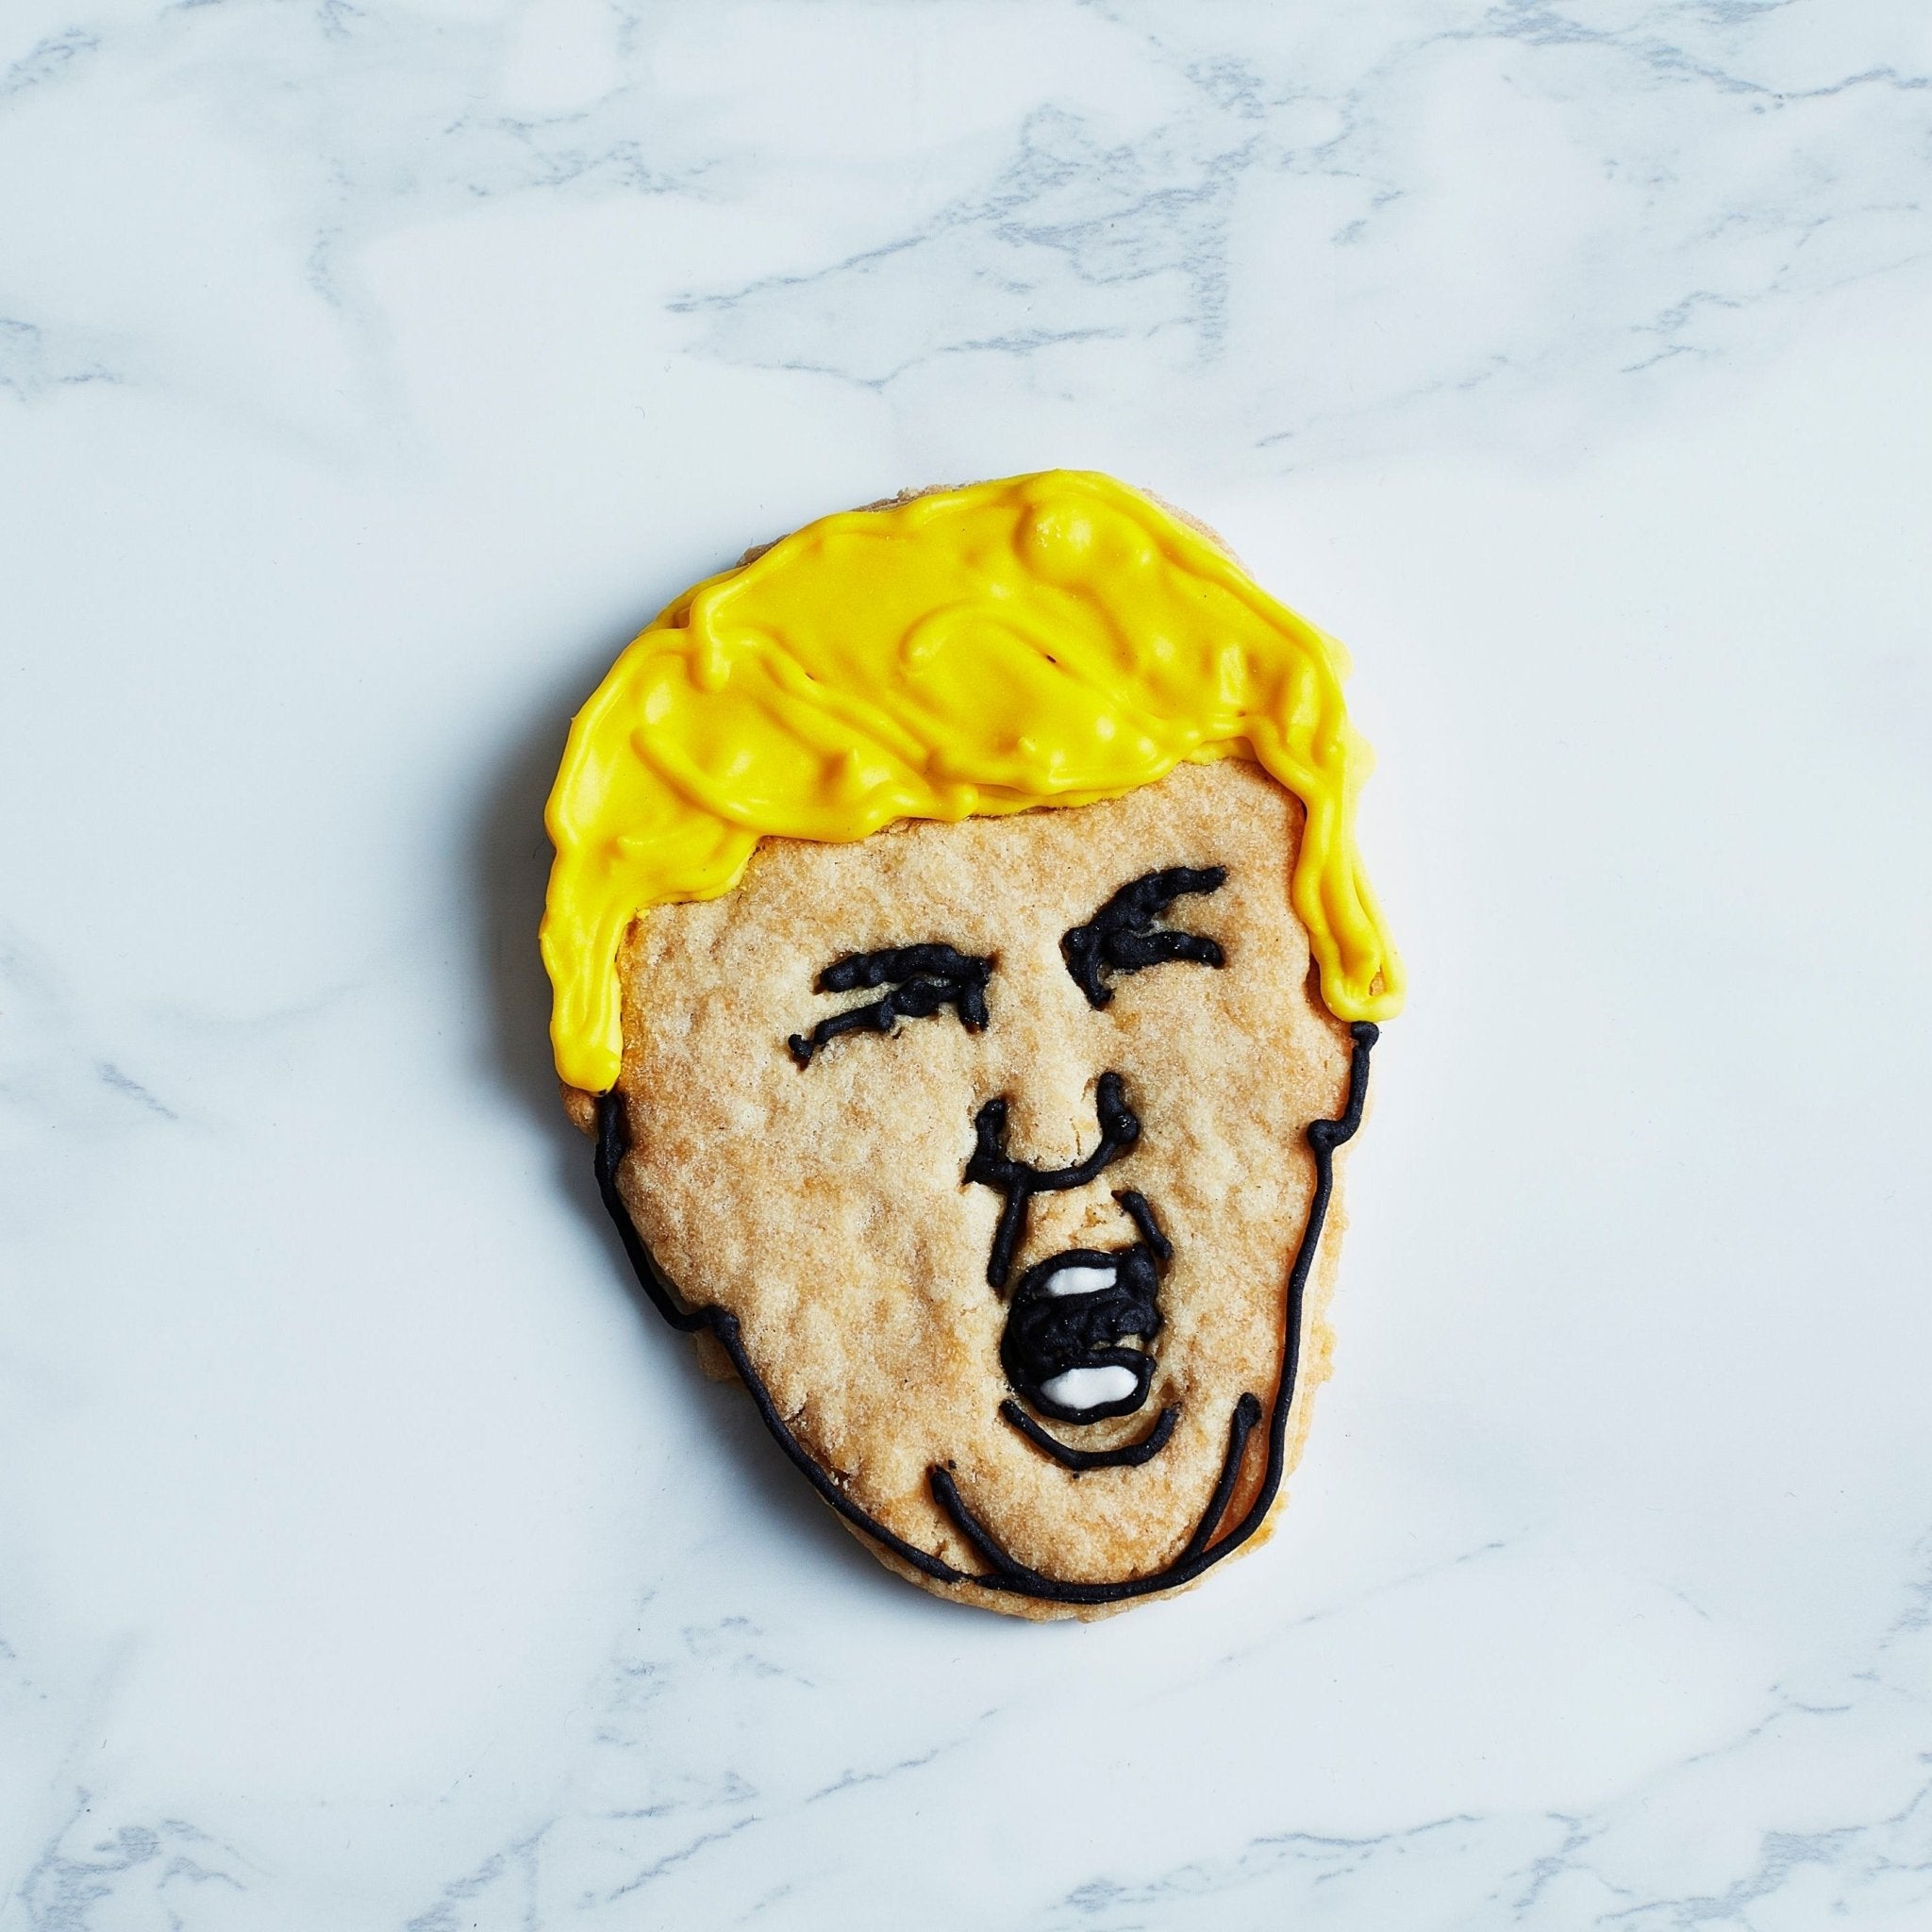 Trump Cookie - Jack and Beyond